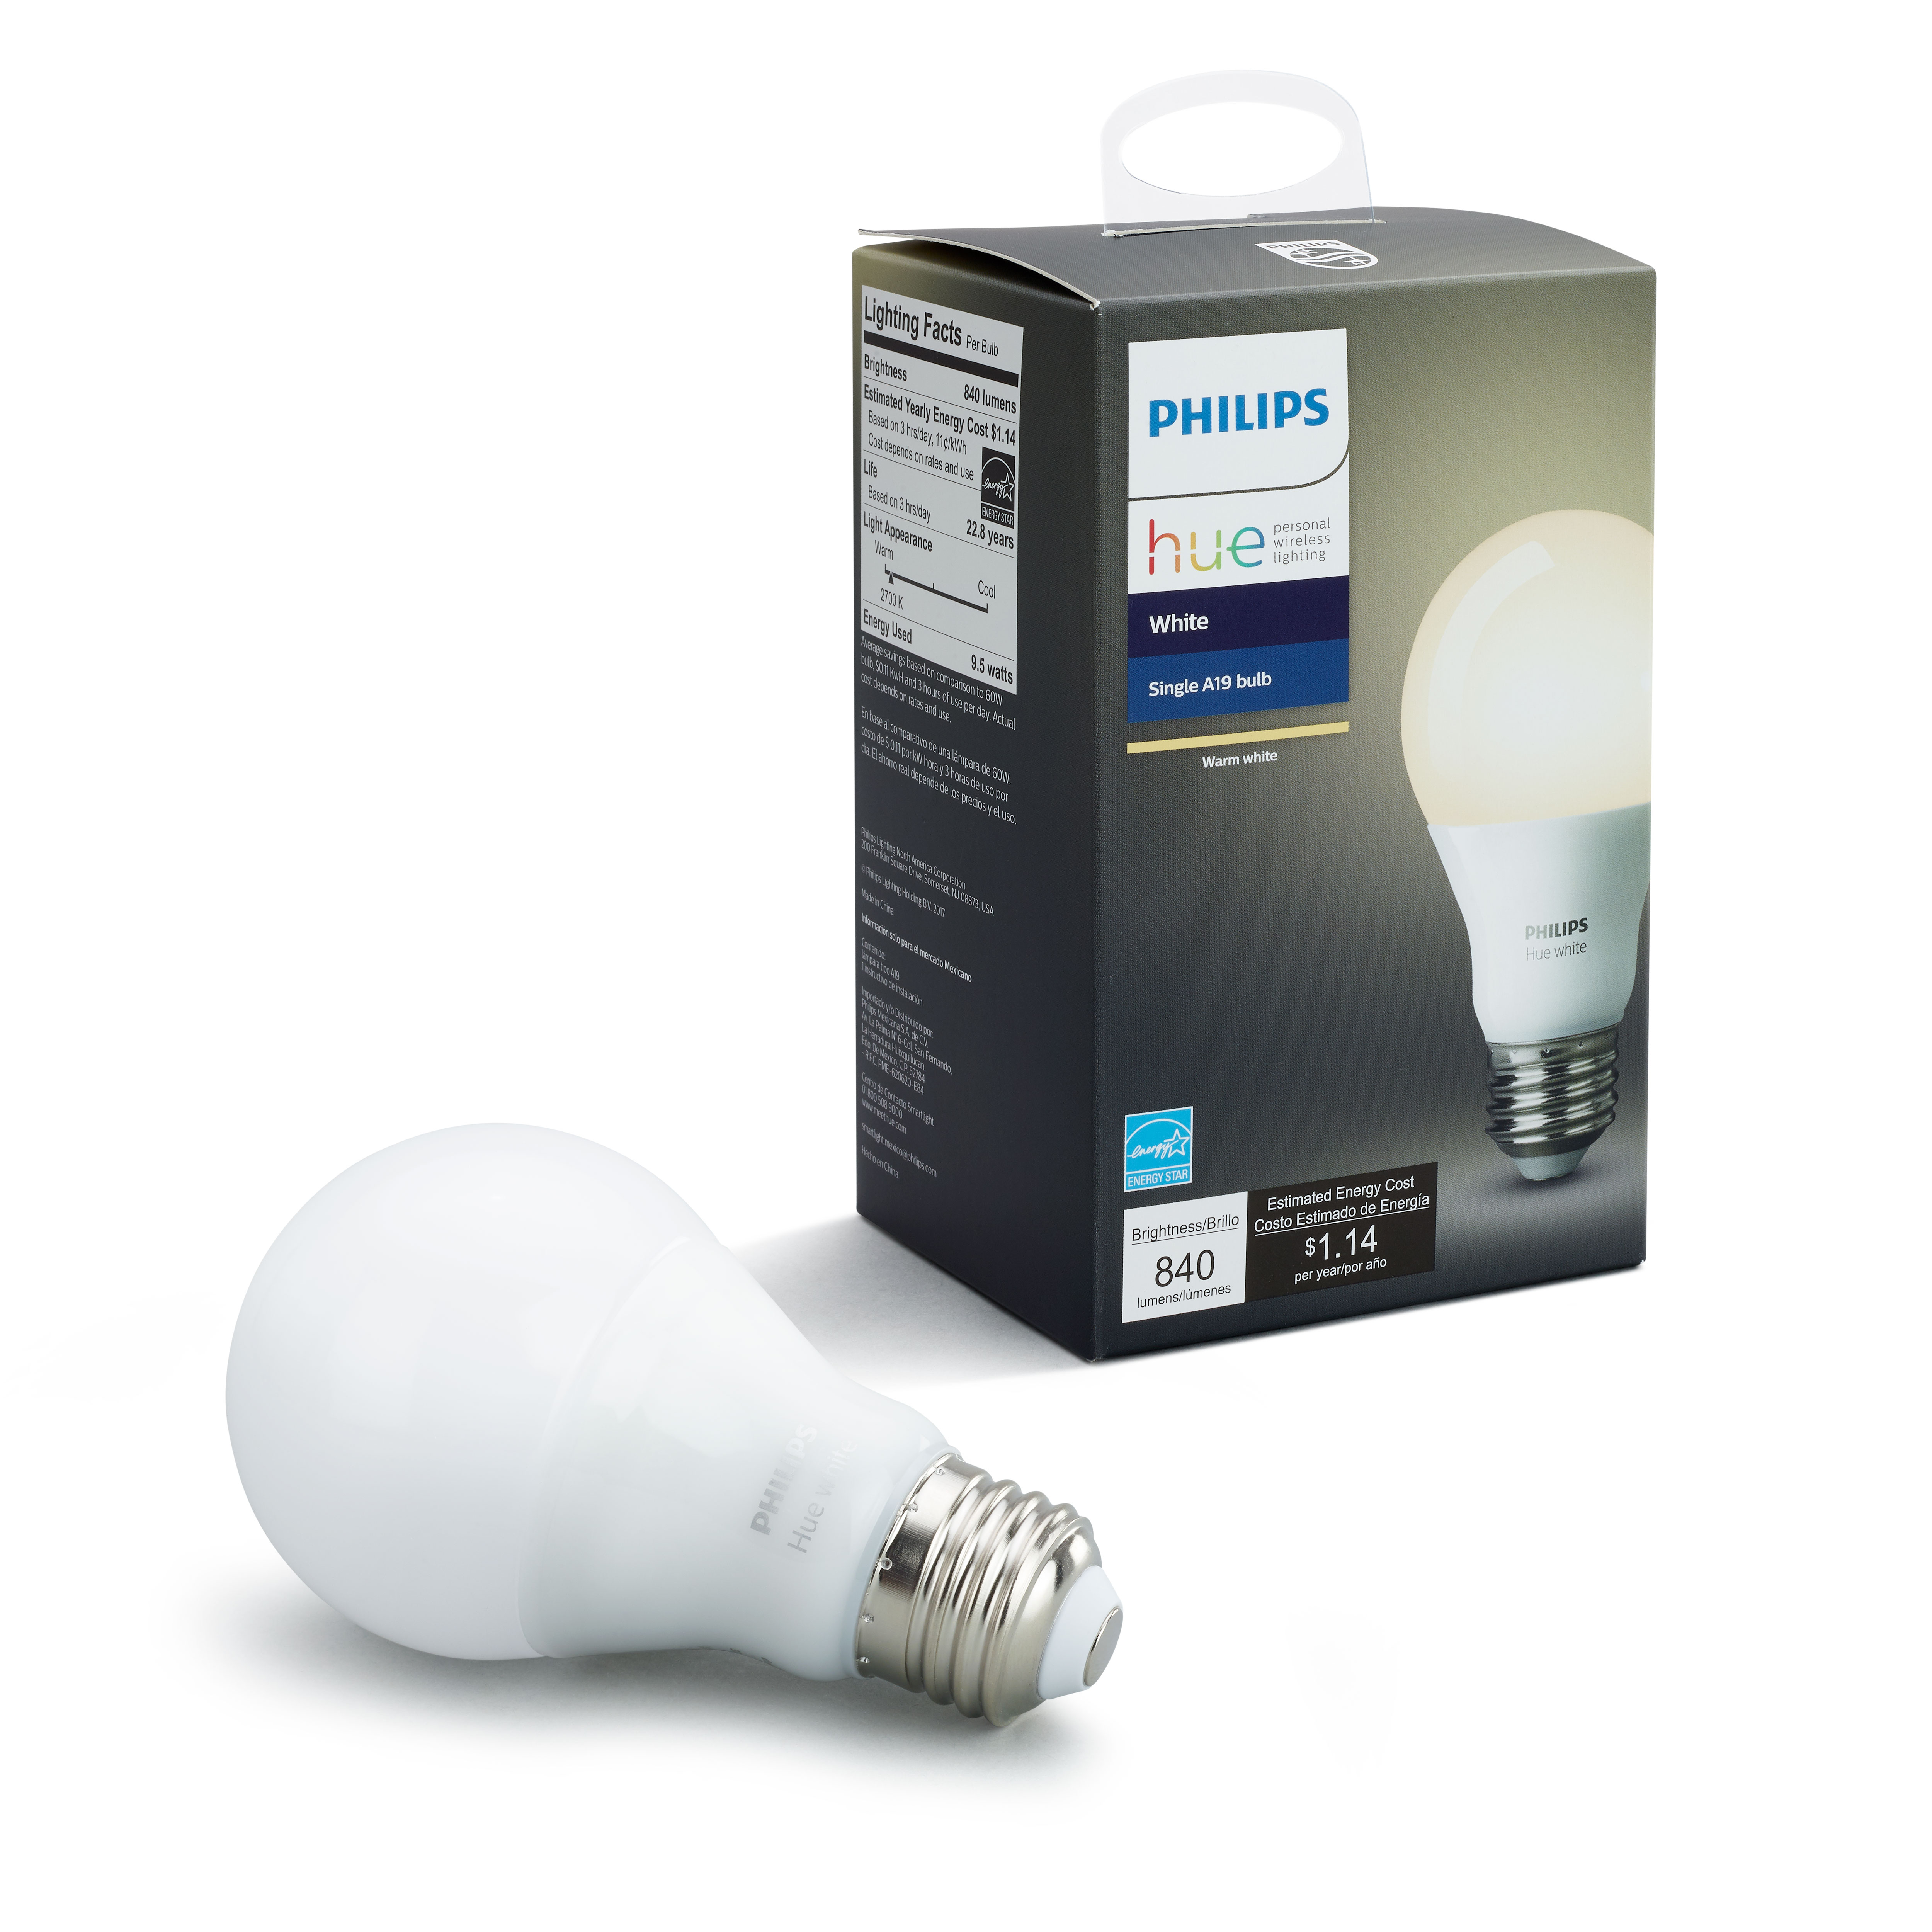 Philips Hue white smart A19 light bulb for $10